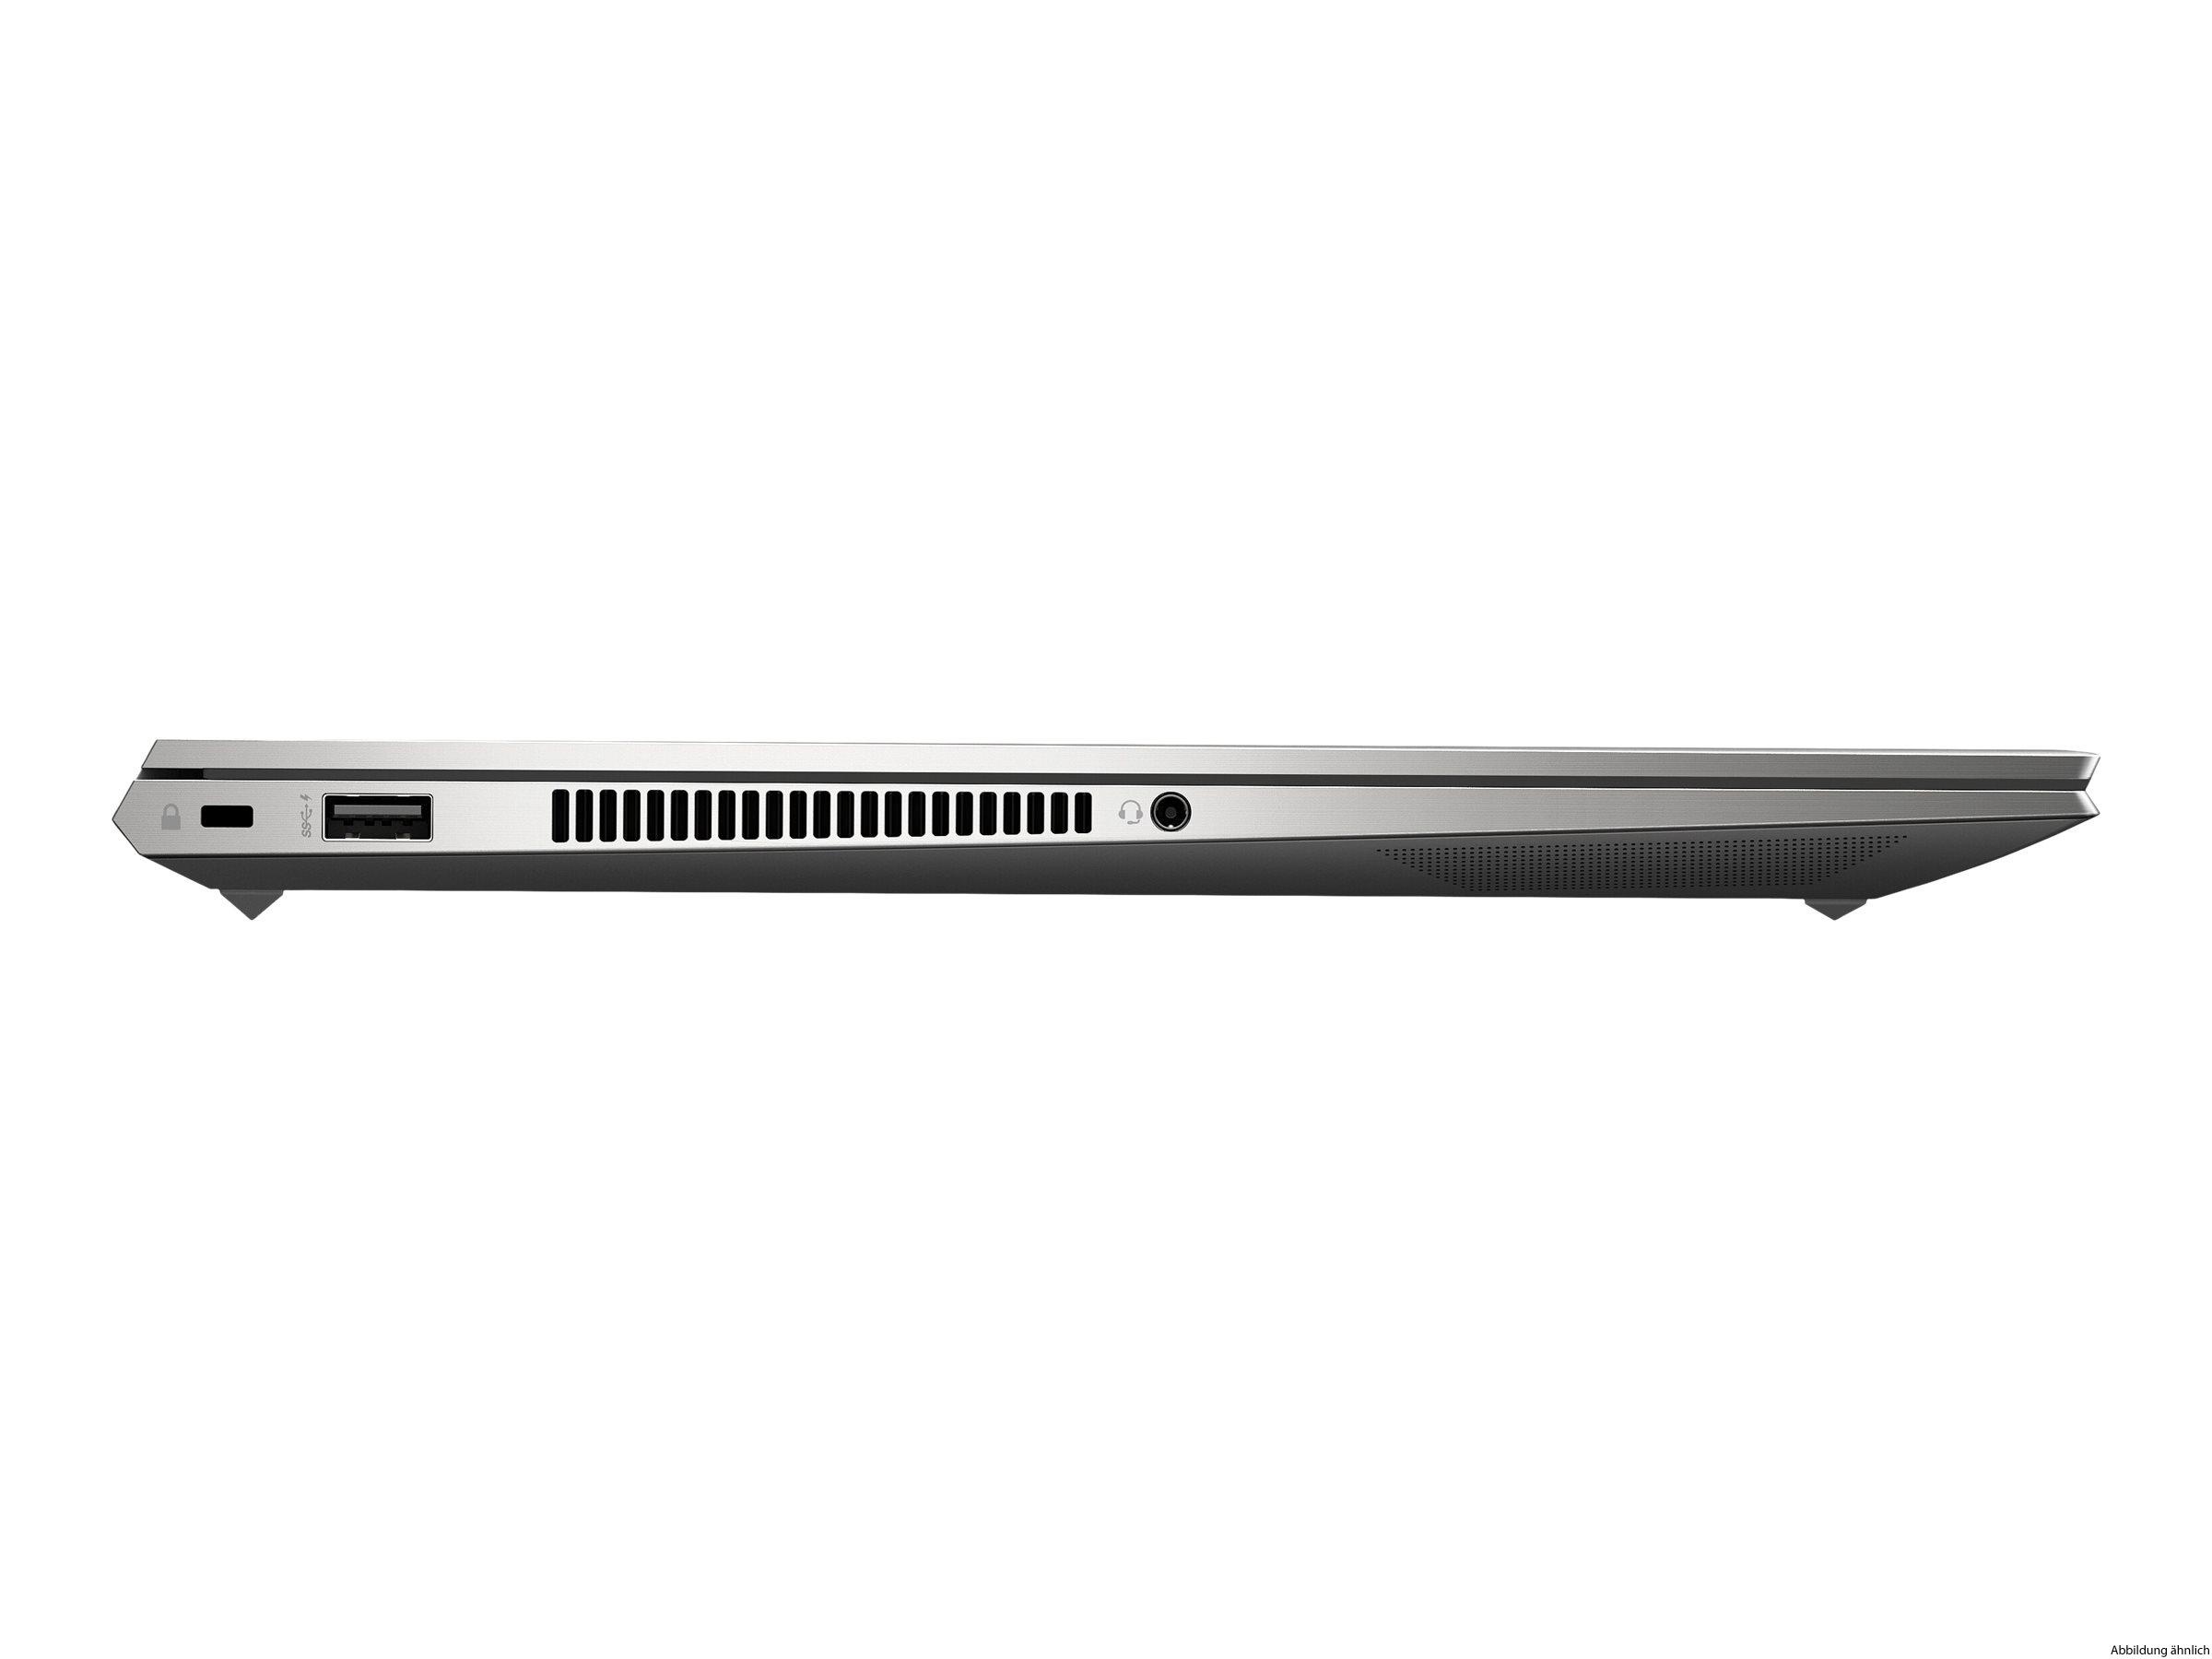 HP ZBook Create G7 i9-10885H 32GB 1TB M.2 15.6" RTX 2080 Super